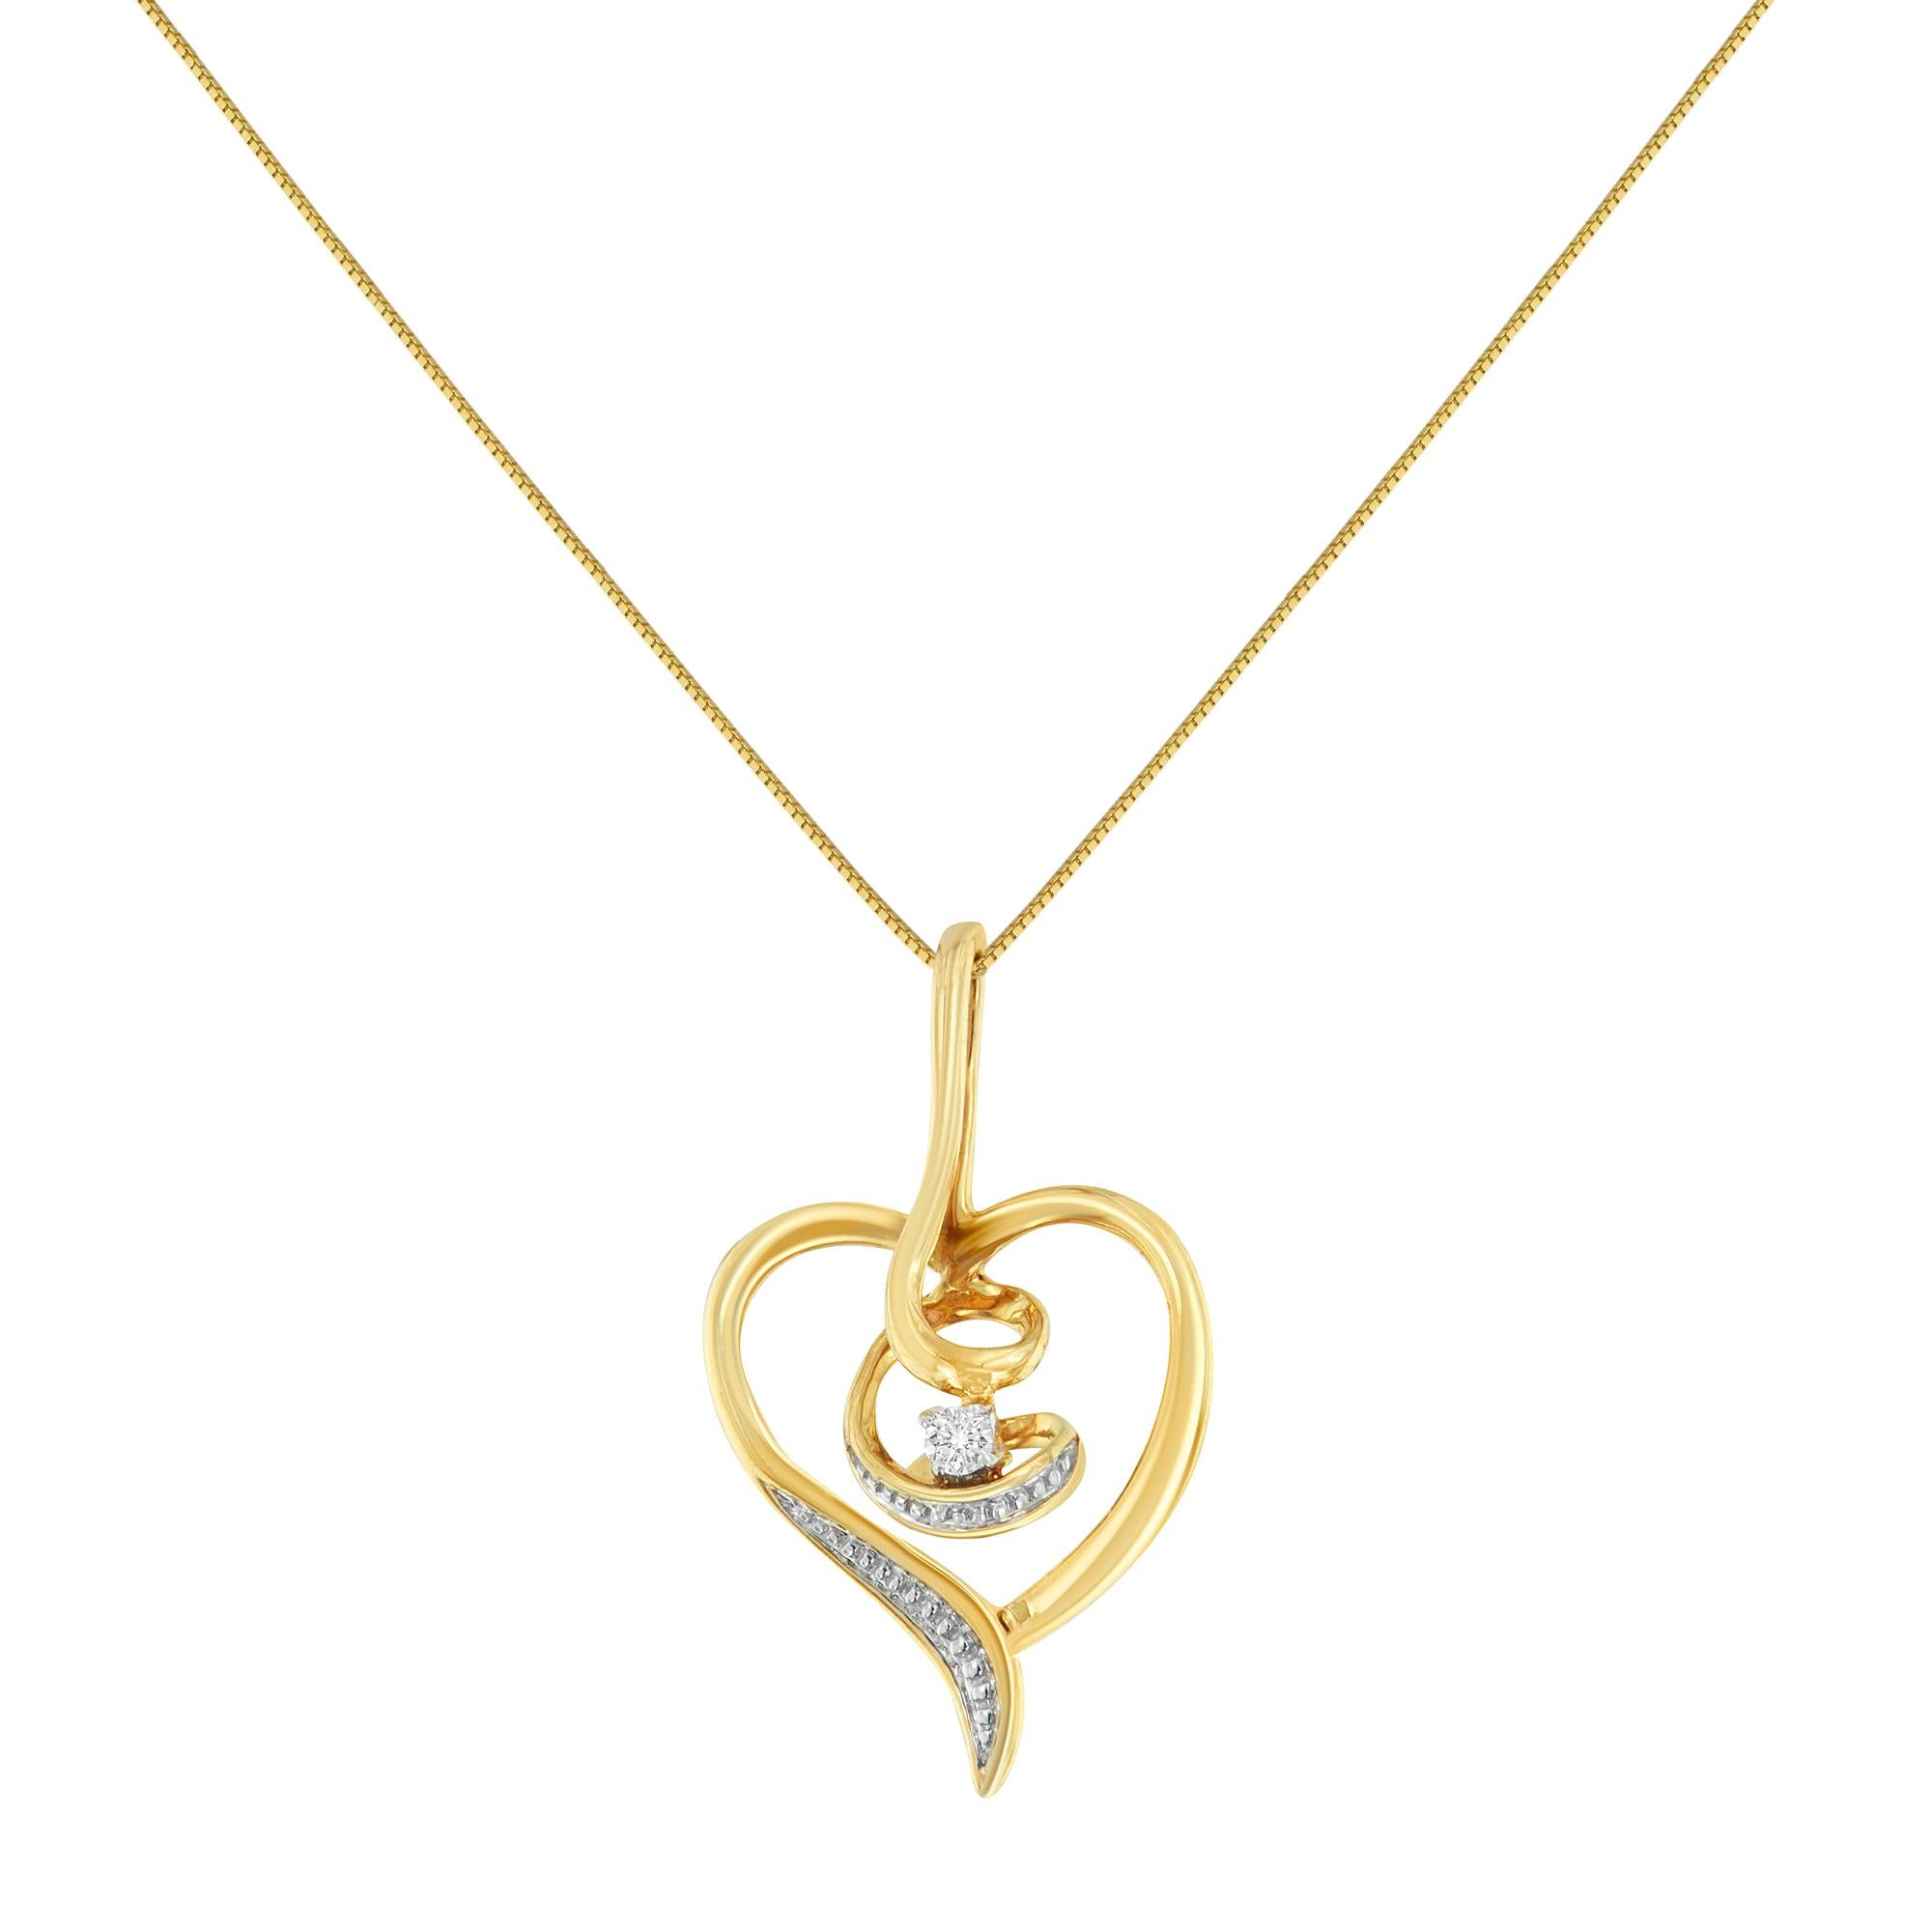 Symbole d'un amour qui ne s'éteint jamais, ce pendentif en forme de cœur en or véritable 10kt au design impeccable tourbillonne au centre et brille d'une dispersion de diamants. C'est une surprise romantique classique qu'elle voudra montrer tous les